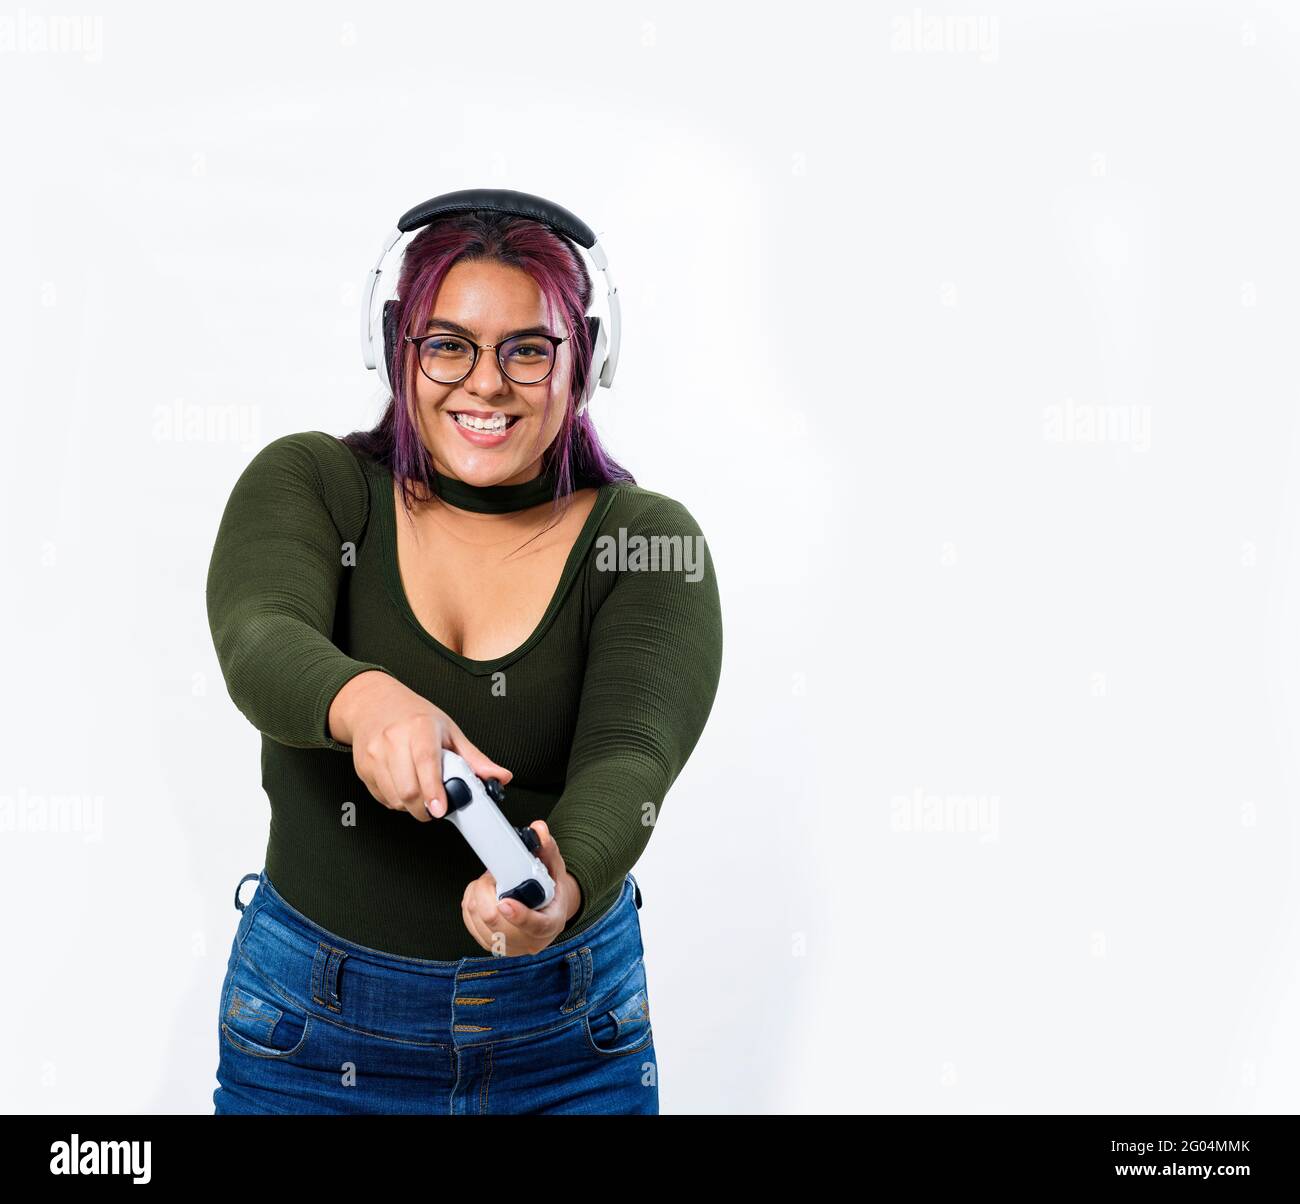 Persona feliz con control de videojuegos - mujeres latinas Foto de stock